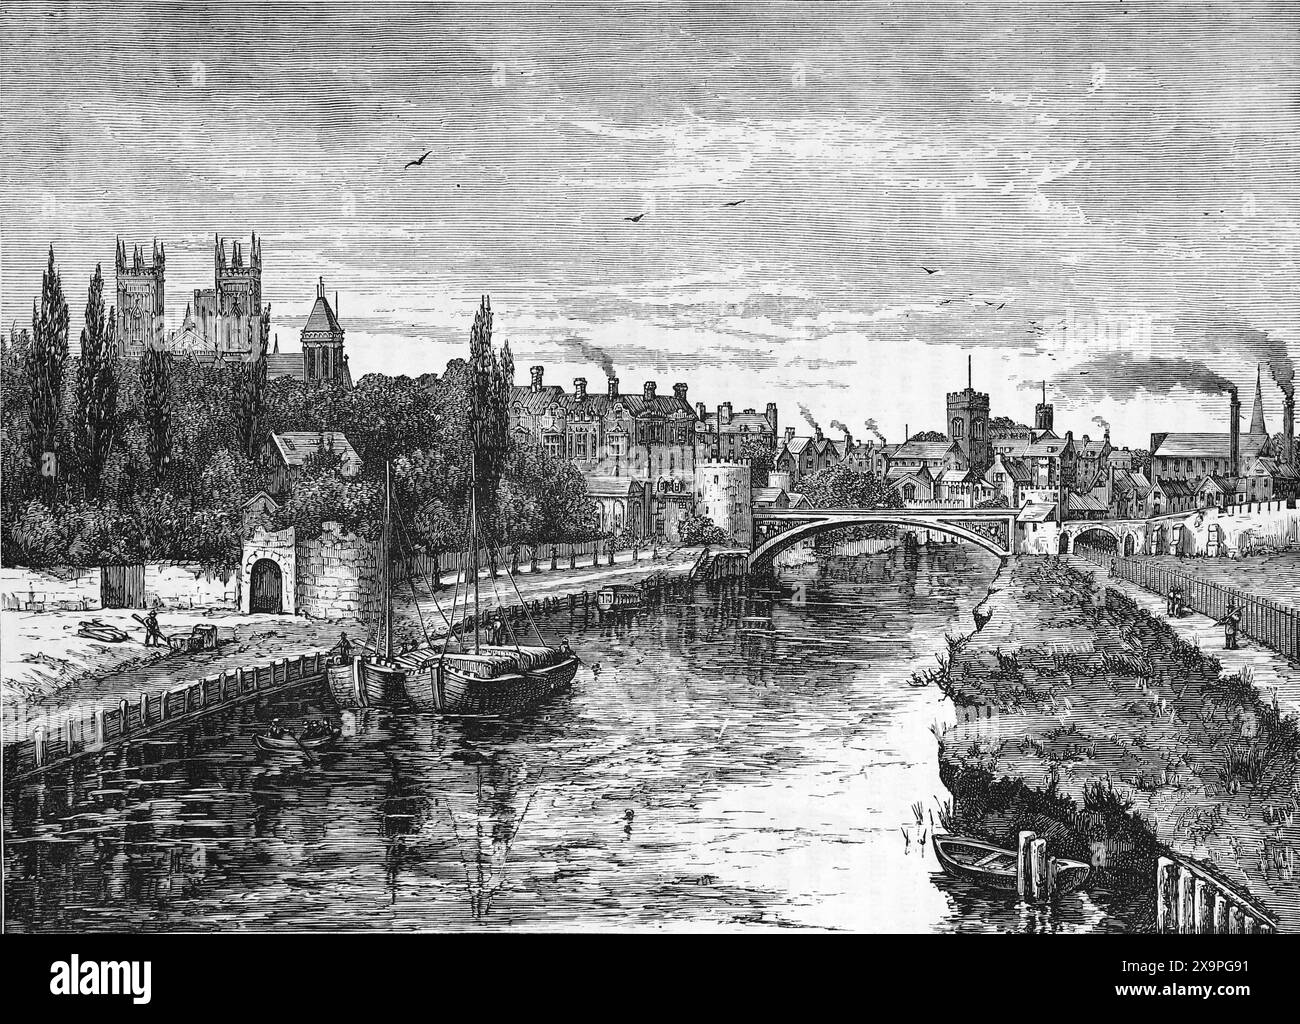 Die Stadt York vom Fluss Ouse, wie sie im späten 19. Jahrhundert erschien. Schwarz-weiß-Illustration aus unserem eigenen Land Band III, veröffentlicht von Cassell, Petter, Galpin & Co. Im späten 19. Jahrhundert. Stockfoto